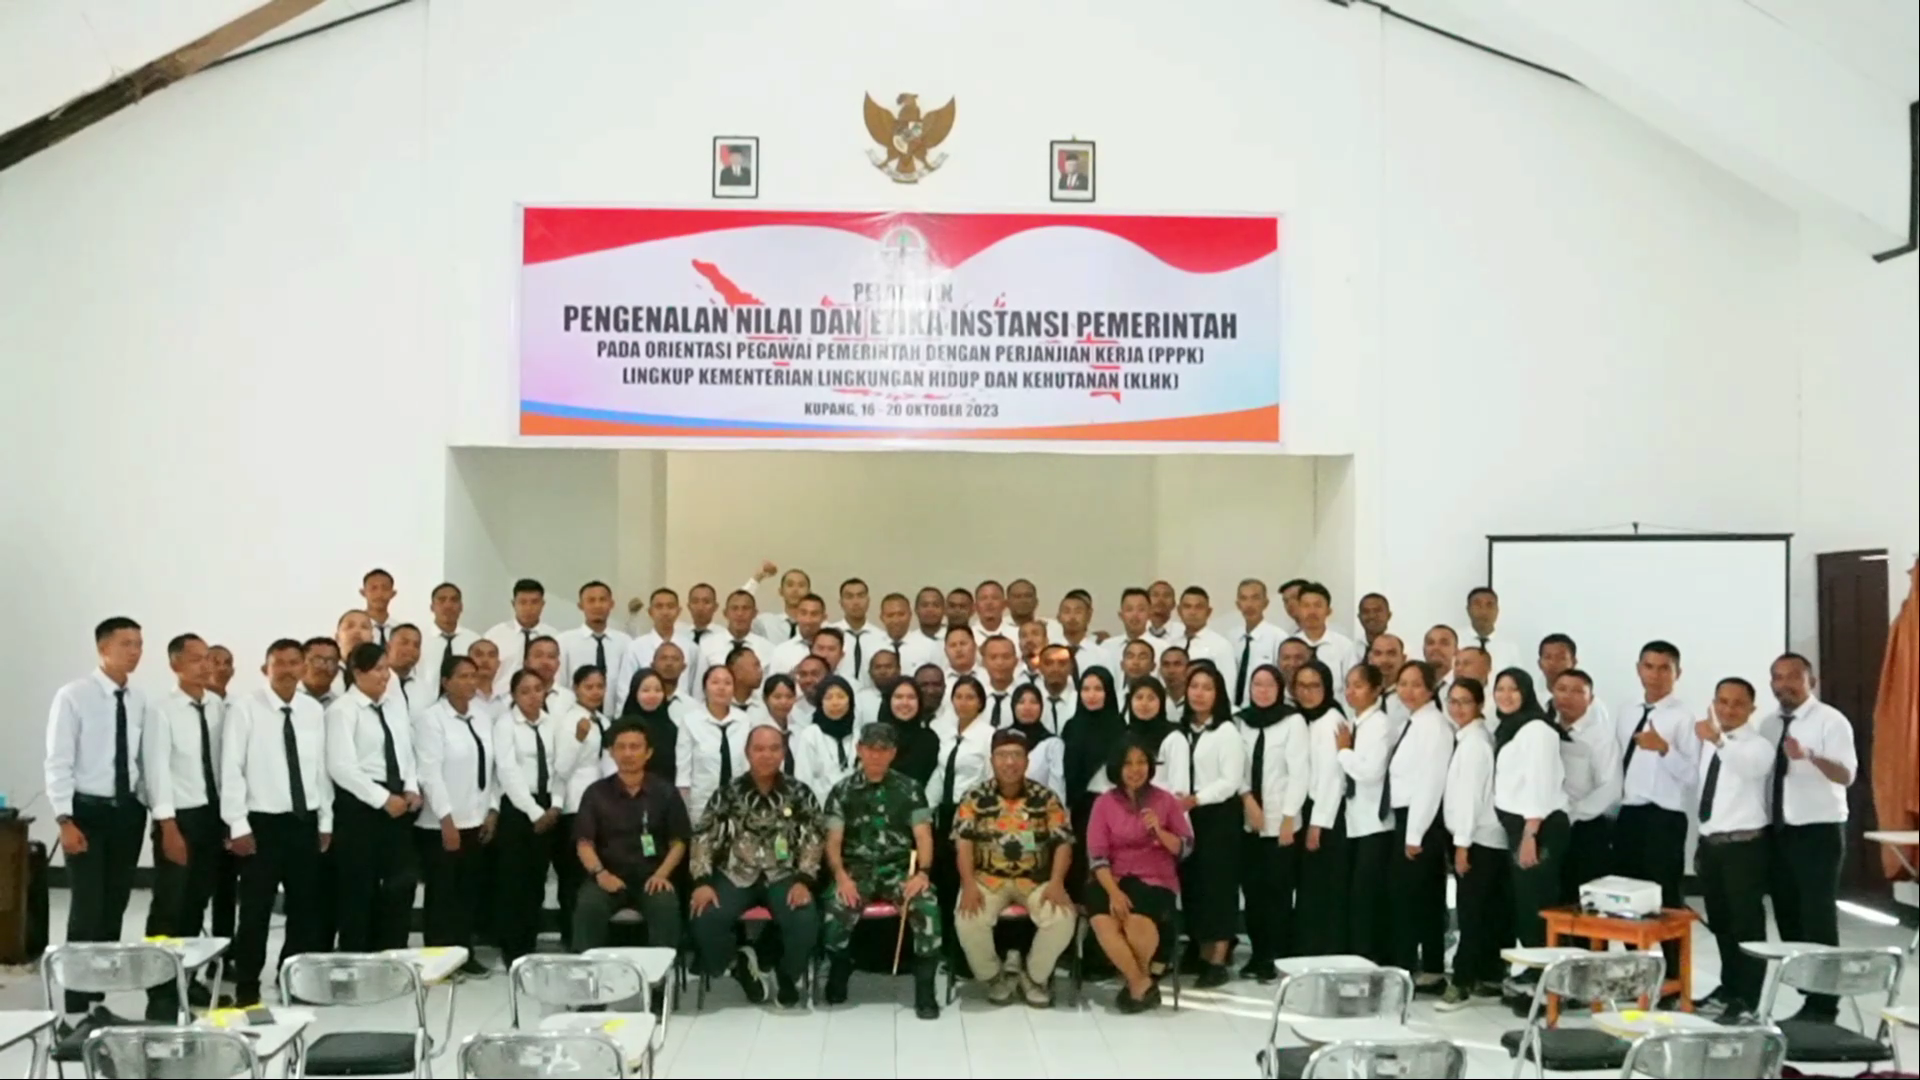 Suksesnya Pelatihan Pengenalan Nilai dan Etika Instansi Pemerintah untuk Orientasi Pegawai PPPK Kementerian Lingkungan Hidup dan Kehutanan di BPLHK Kupang